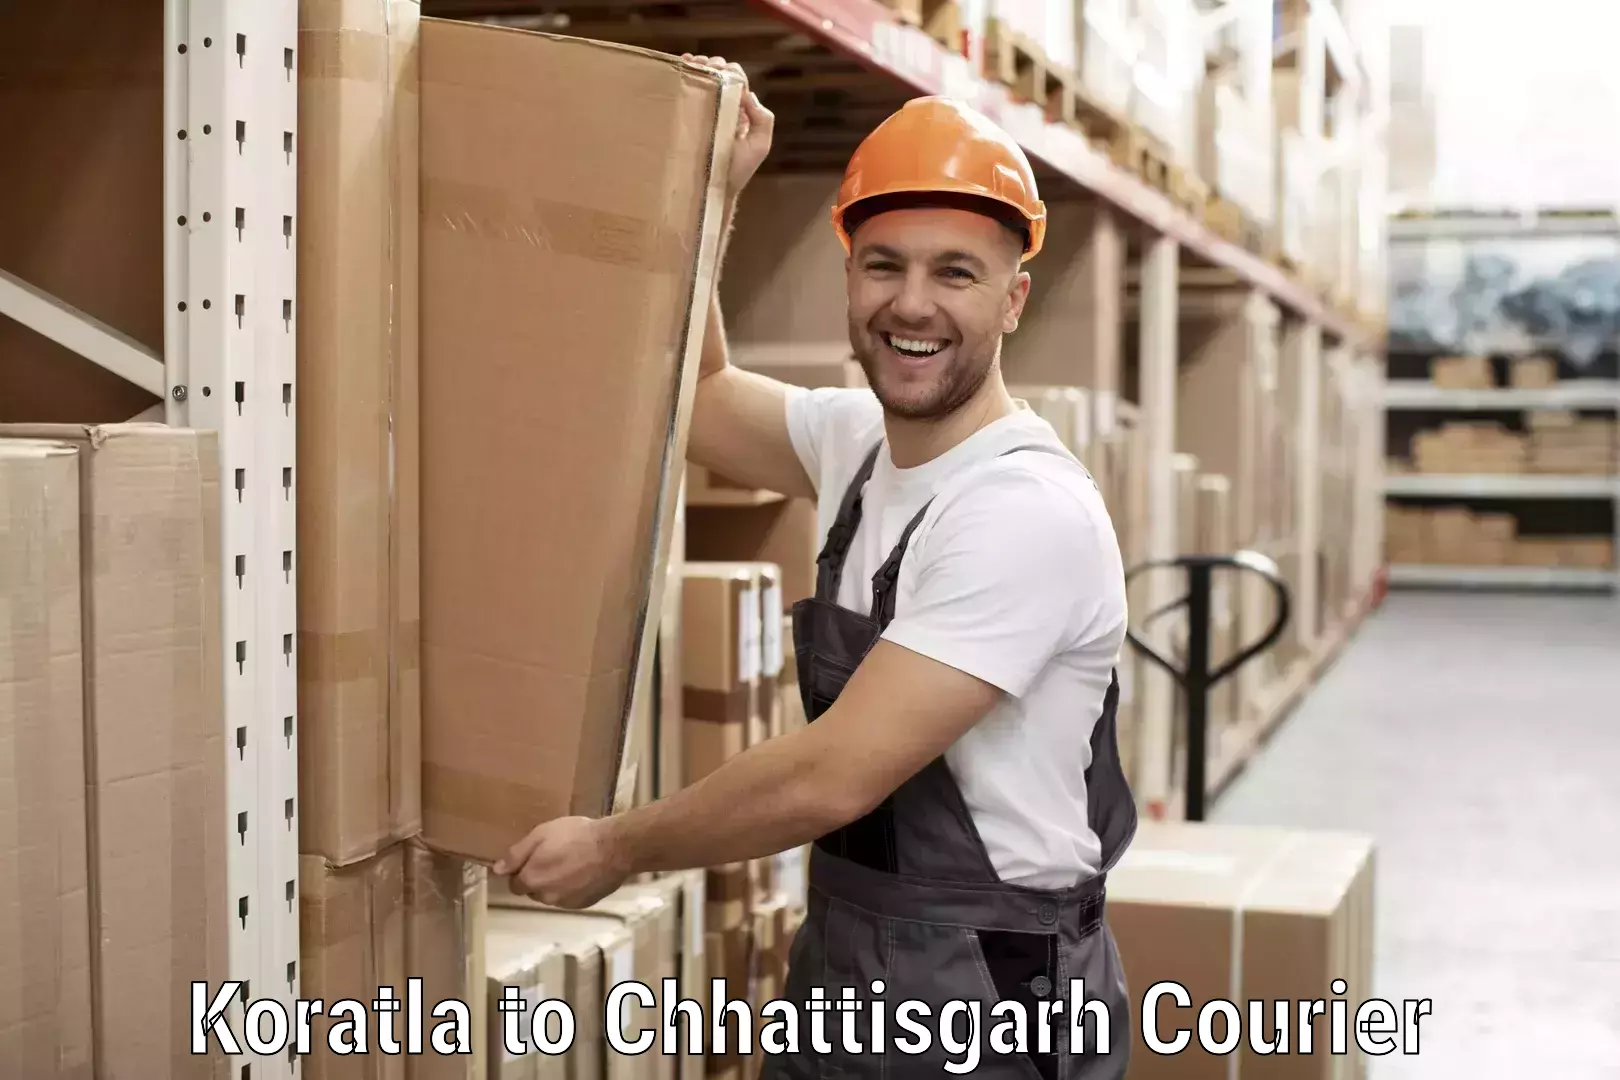 Cash on delivery service in Koratla to Patna Chhattisgarh